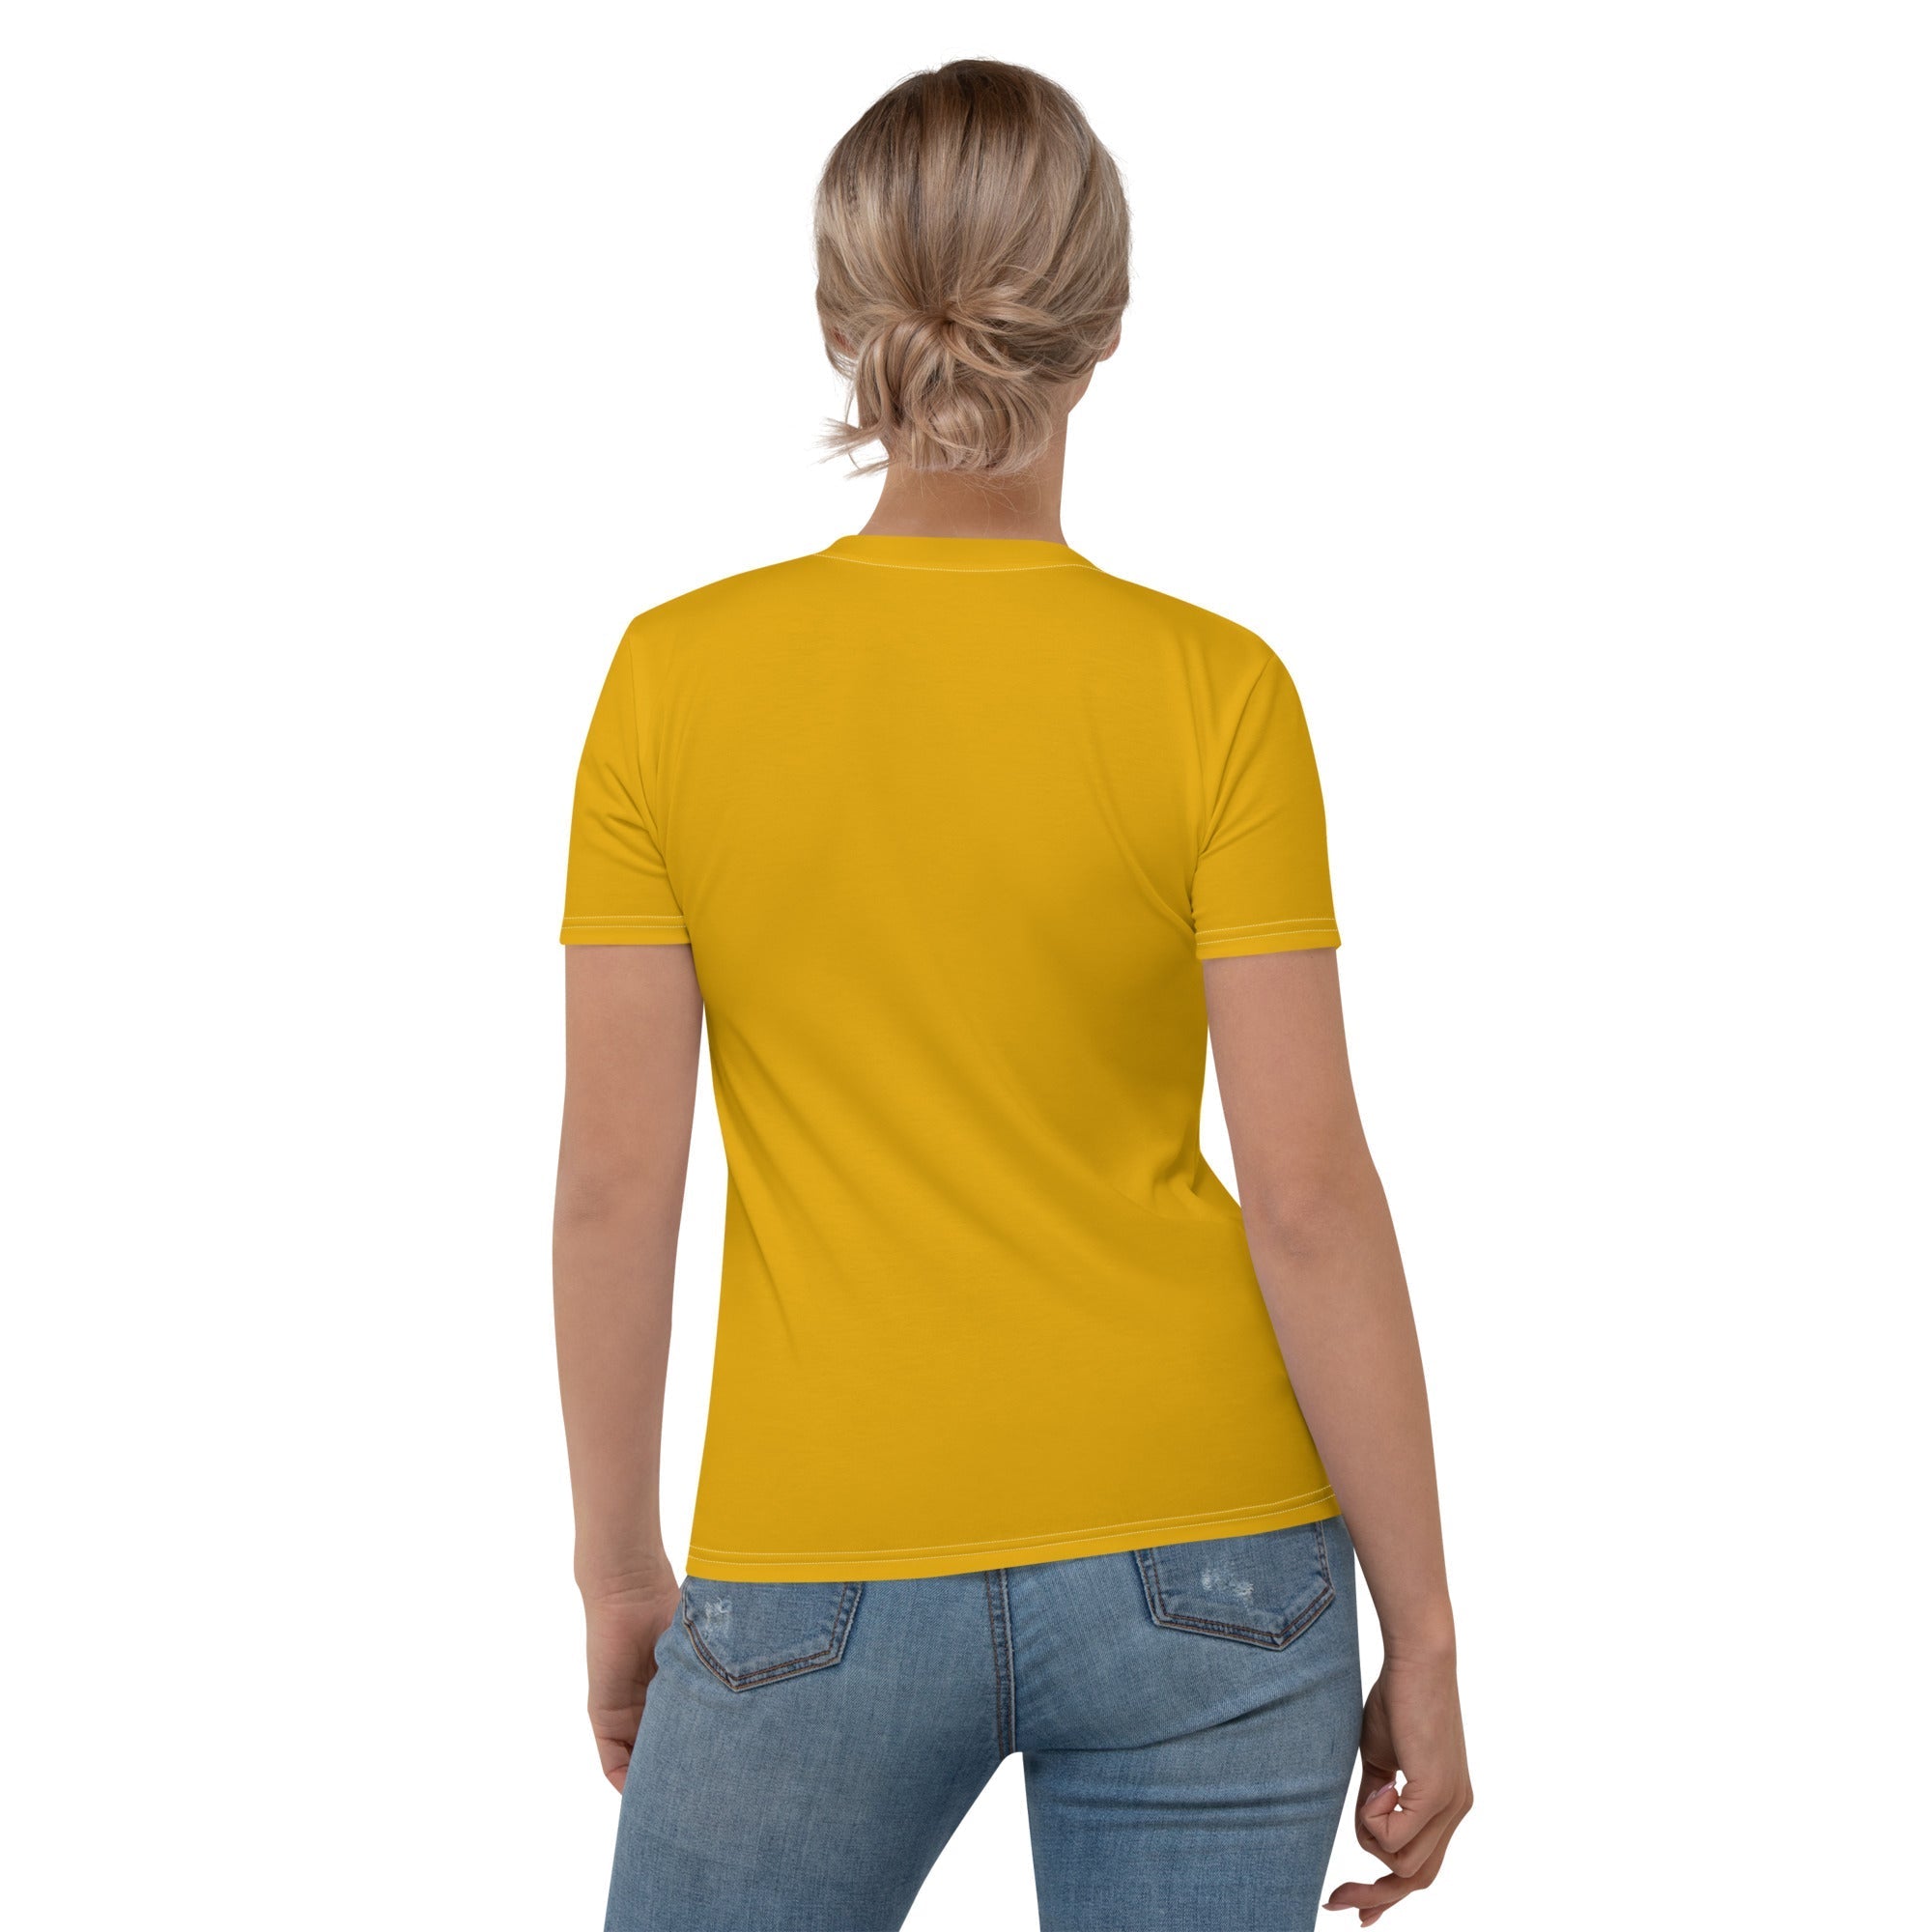 Mustard Yellow T-shirt